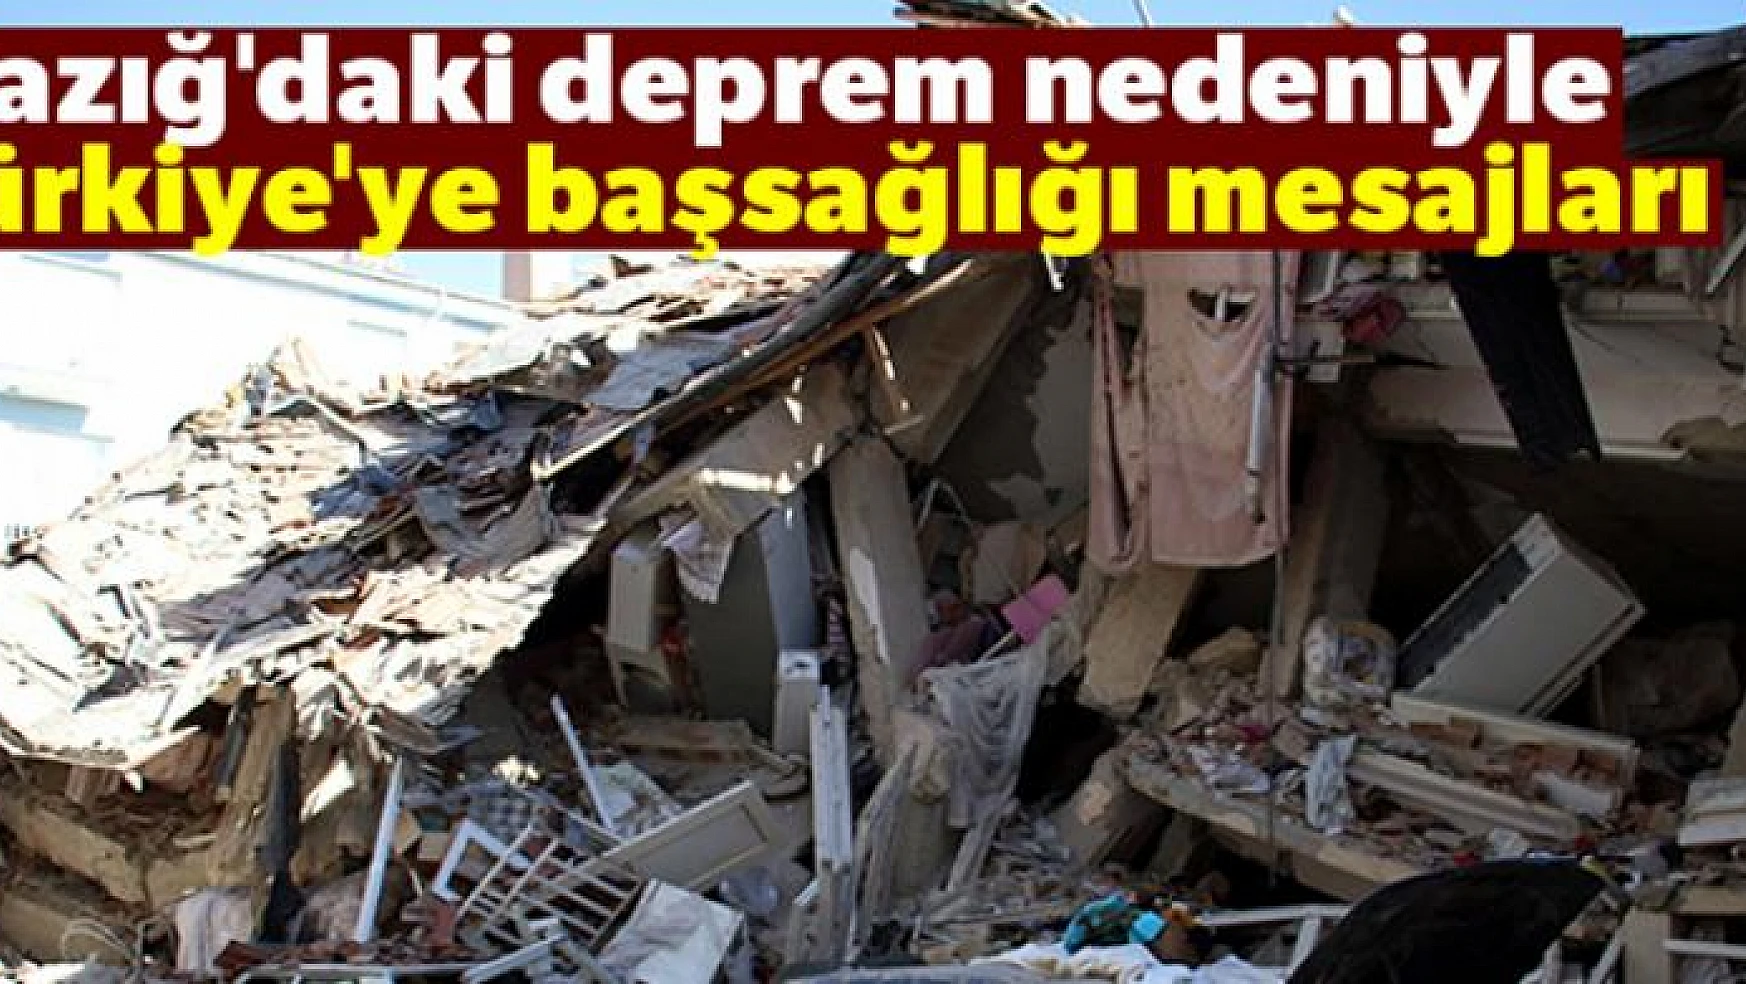 Elazığ'daki deprem nedeniyle Türkiye'ye başsağlığı mesajları